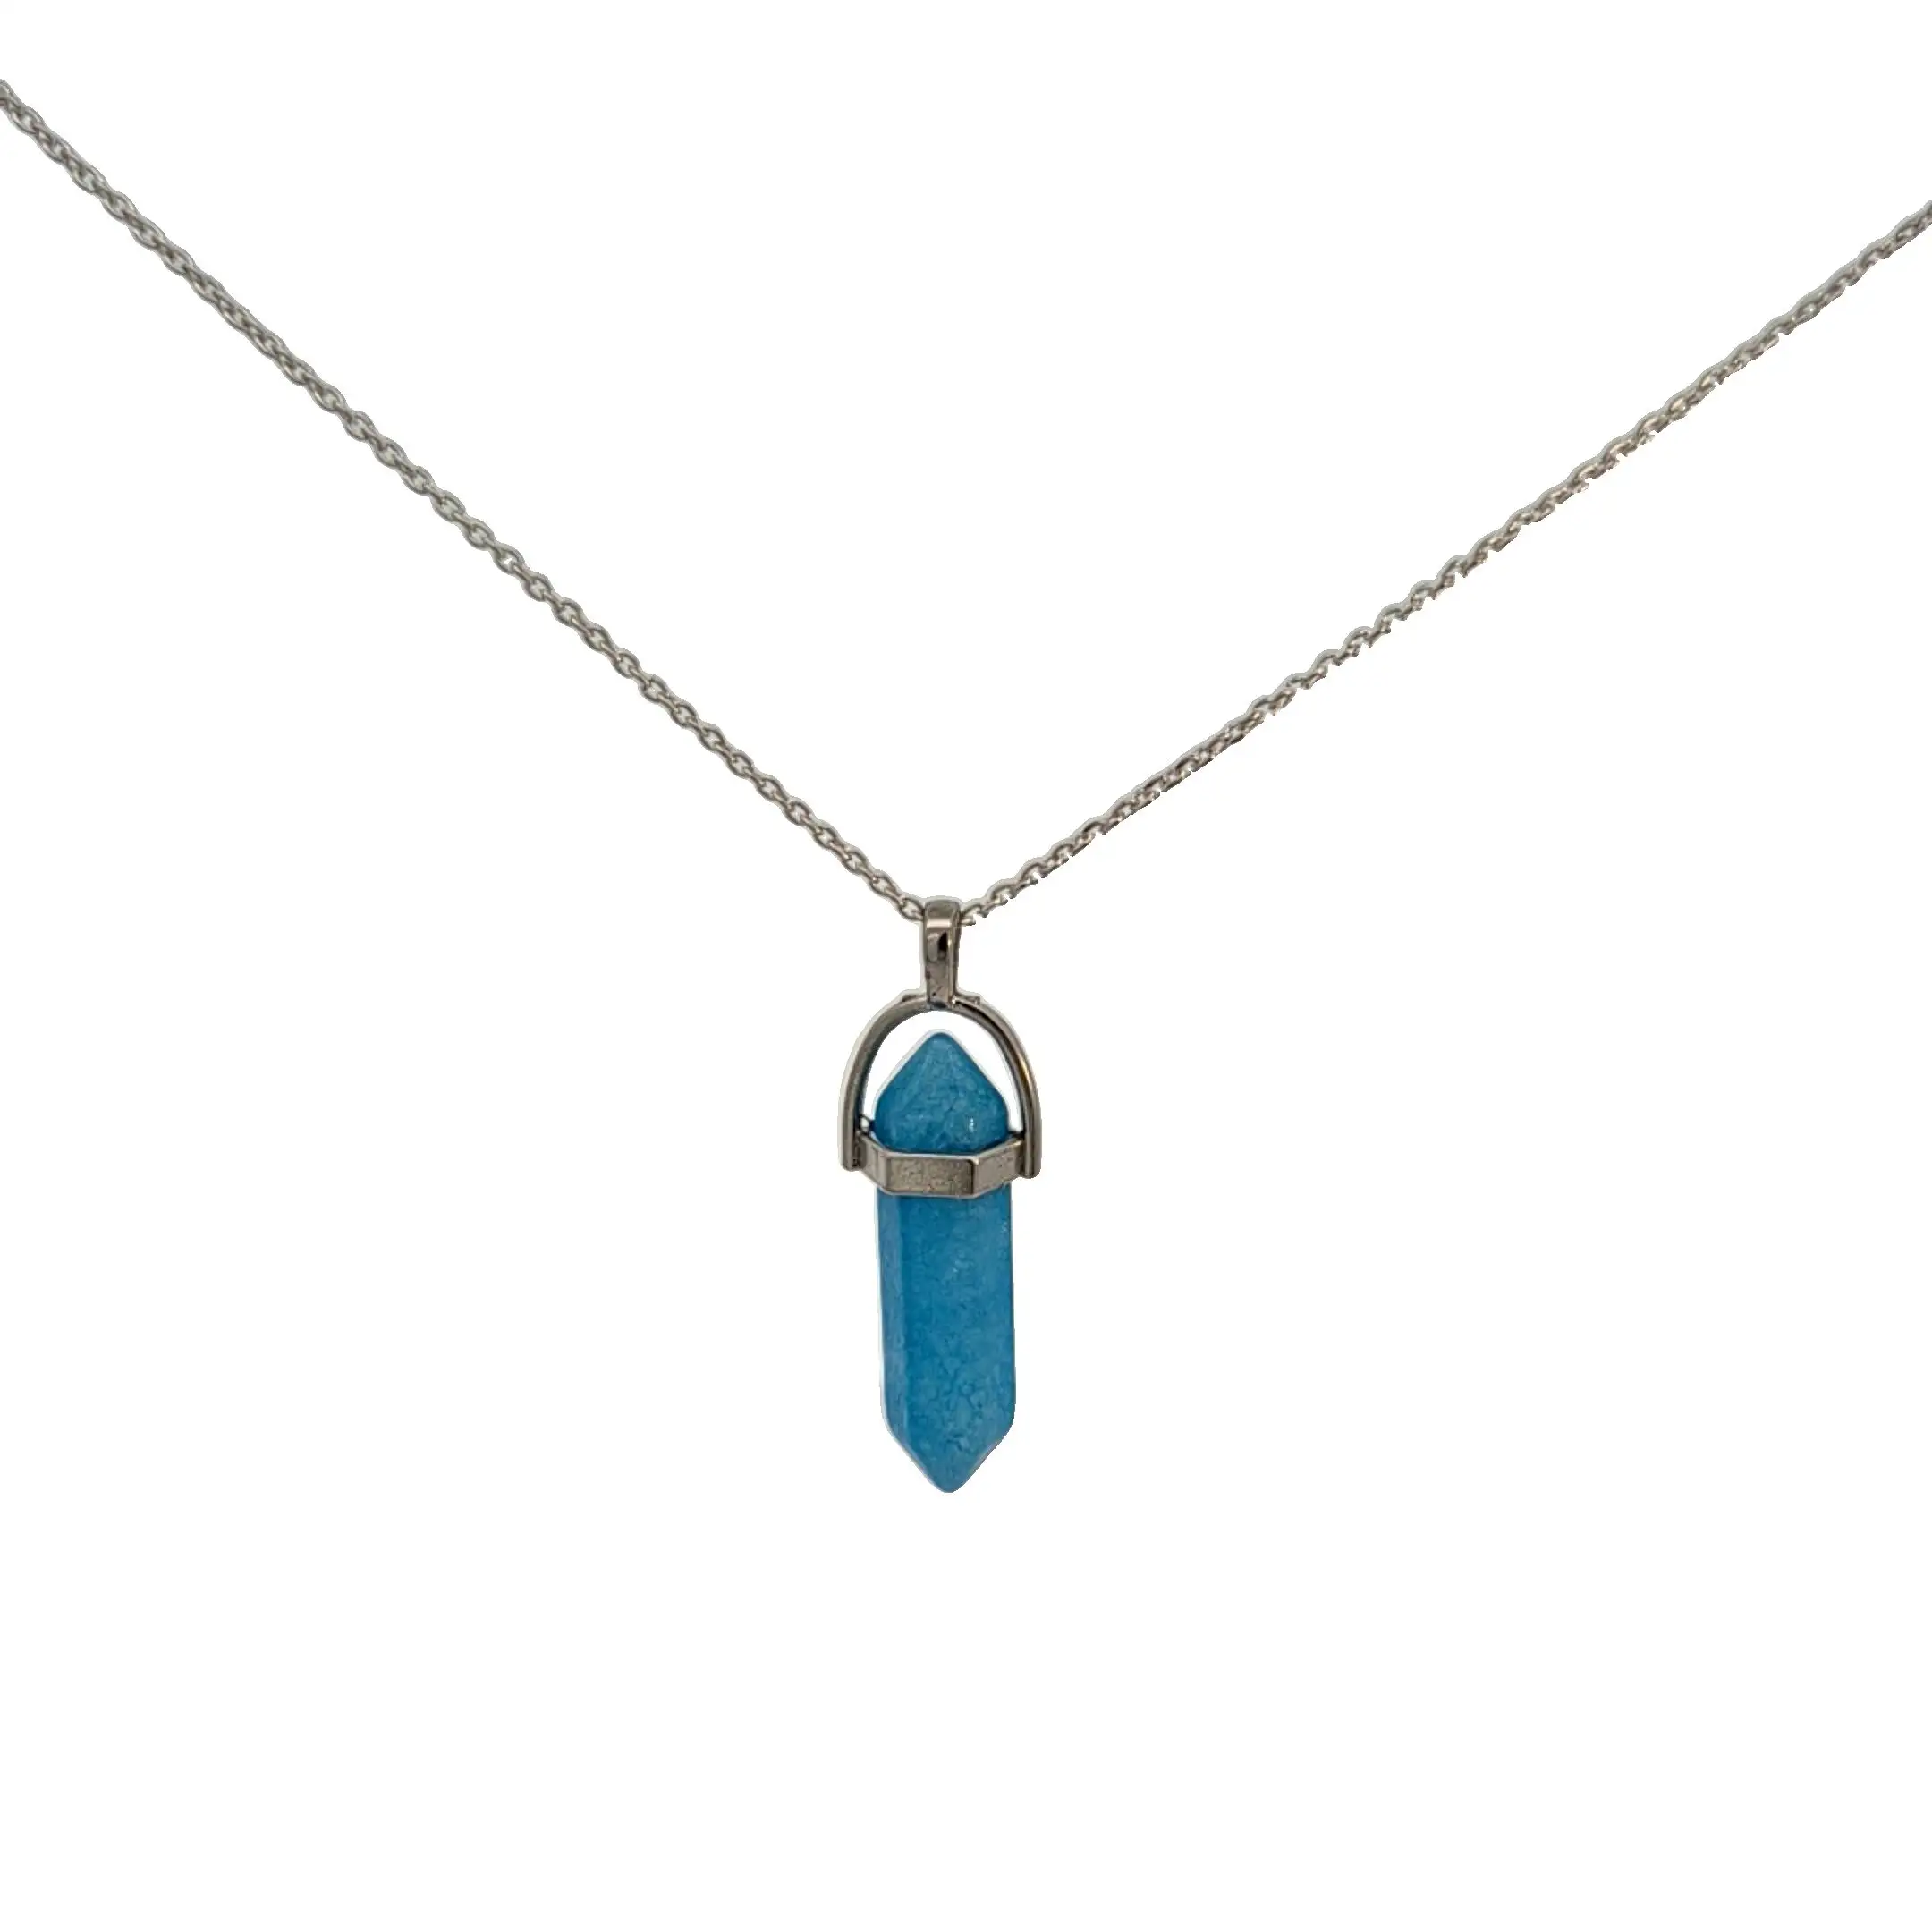 Элегантное серебряное ожерелье с синим ониксом, чудесный камень с мощными лечебными свойствами, повседневная одежда для девушек по факторной цене